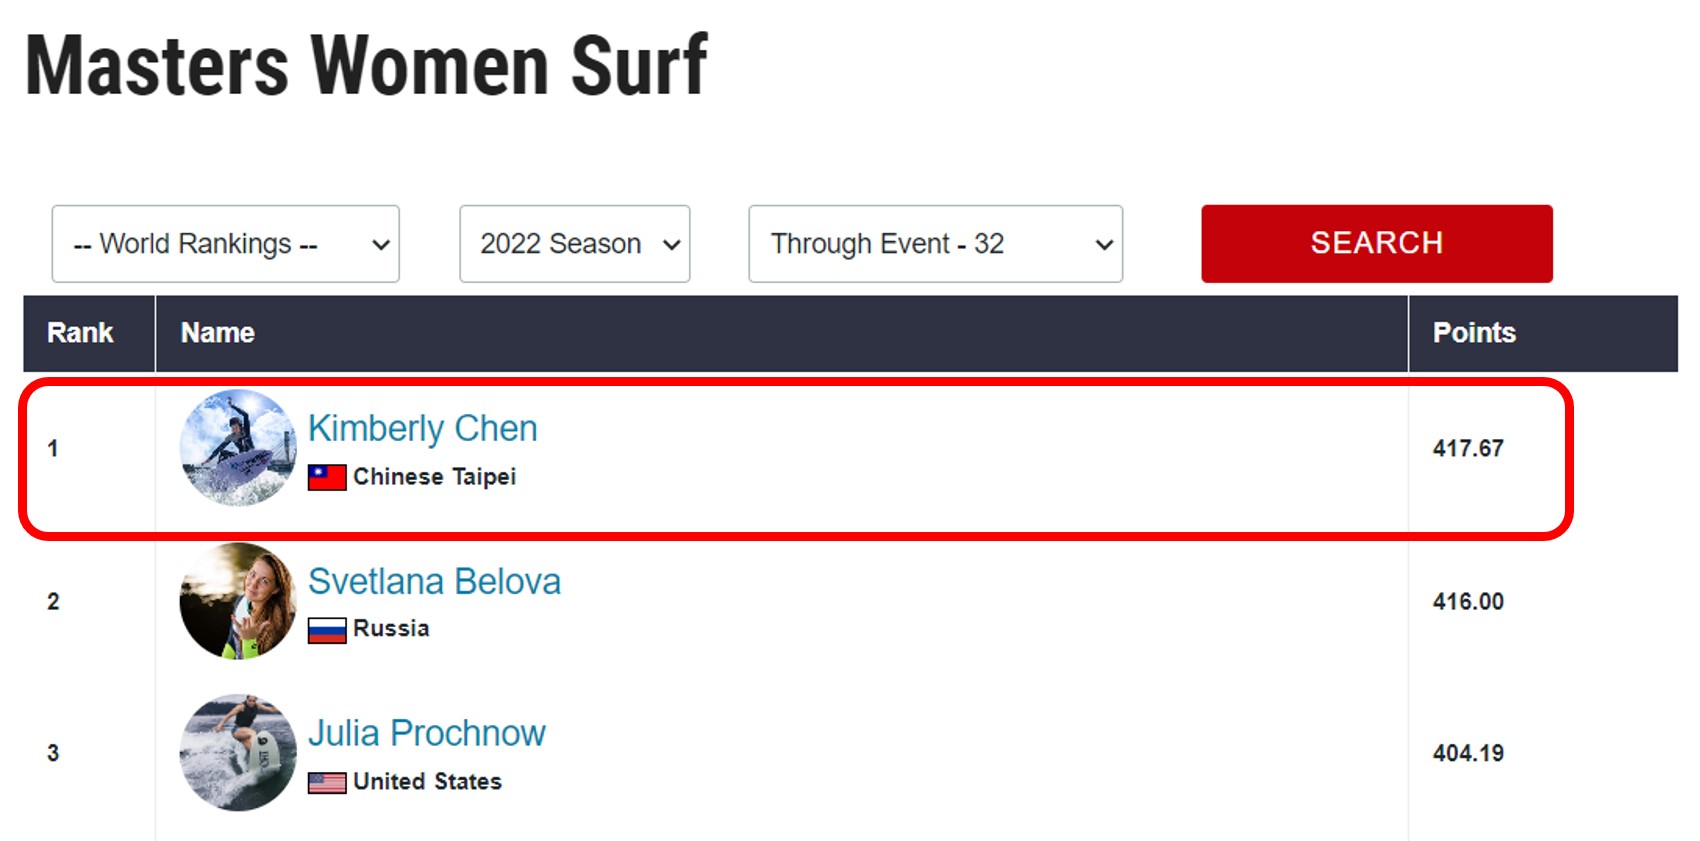 台灣快艇衝浪女神Kimberly陳美彤Masters Women Surf 世界排名第一。 STARFiSH PR星予公關提供